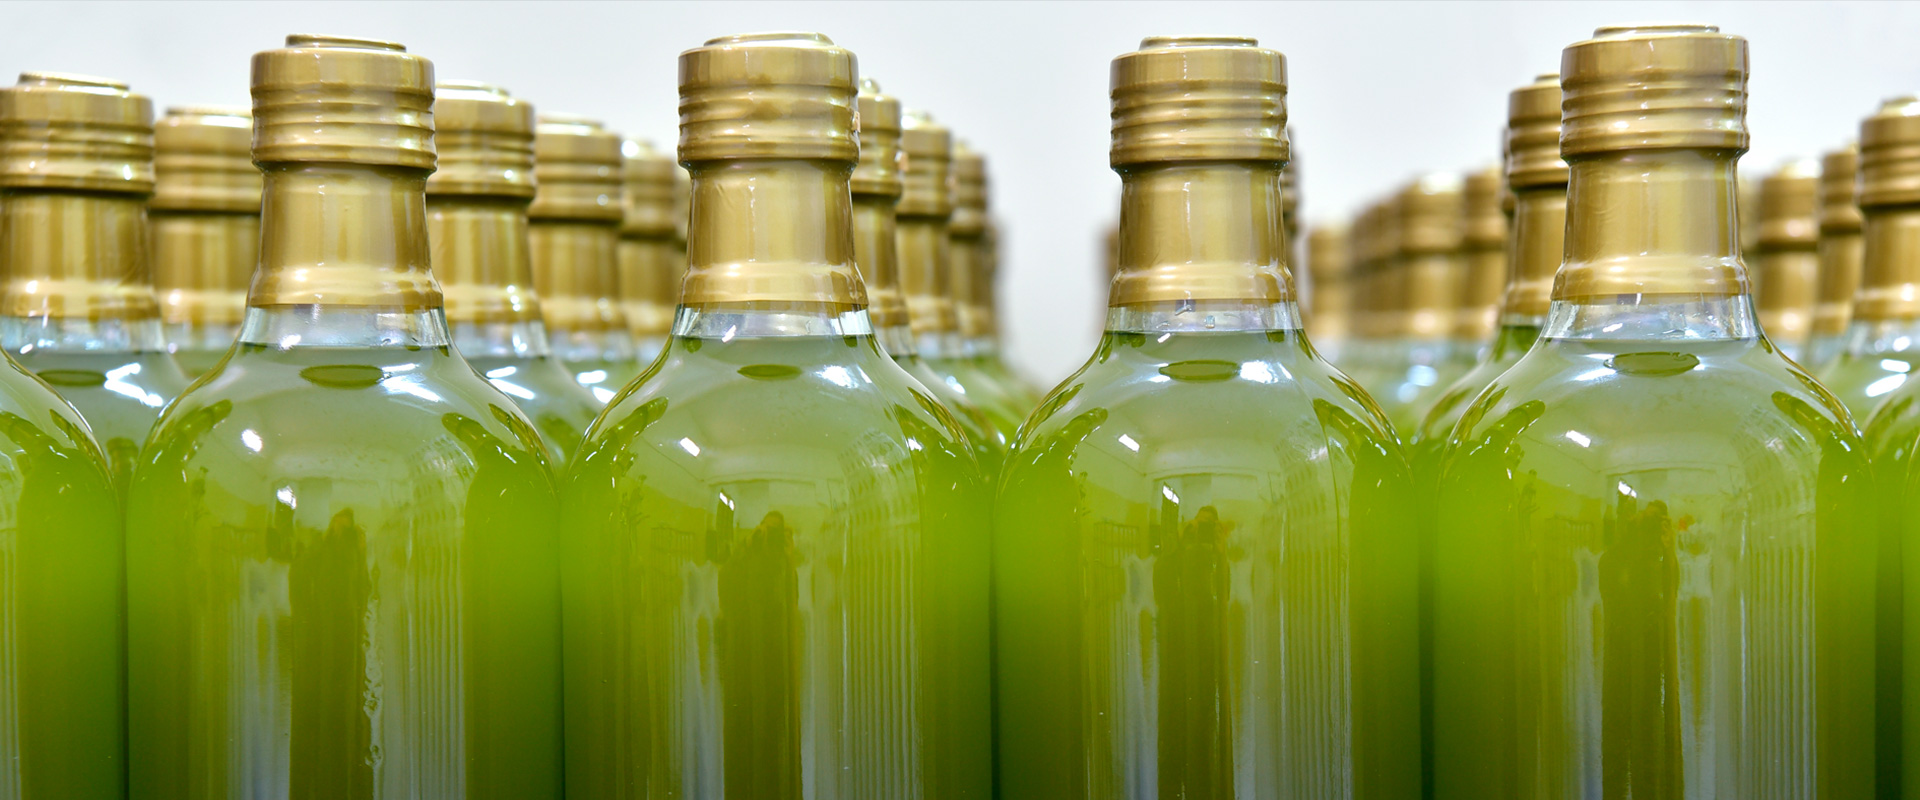 Plusieurs bouteilles en verre avec de l'huile d'olive